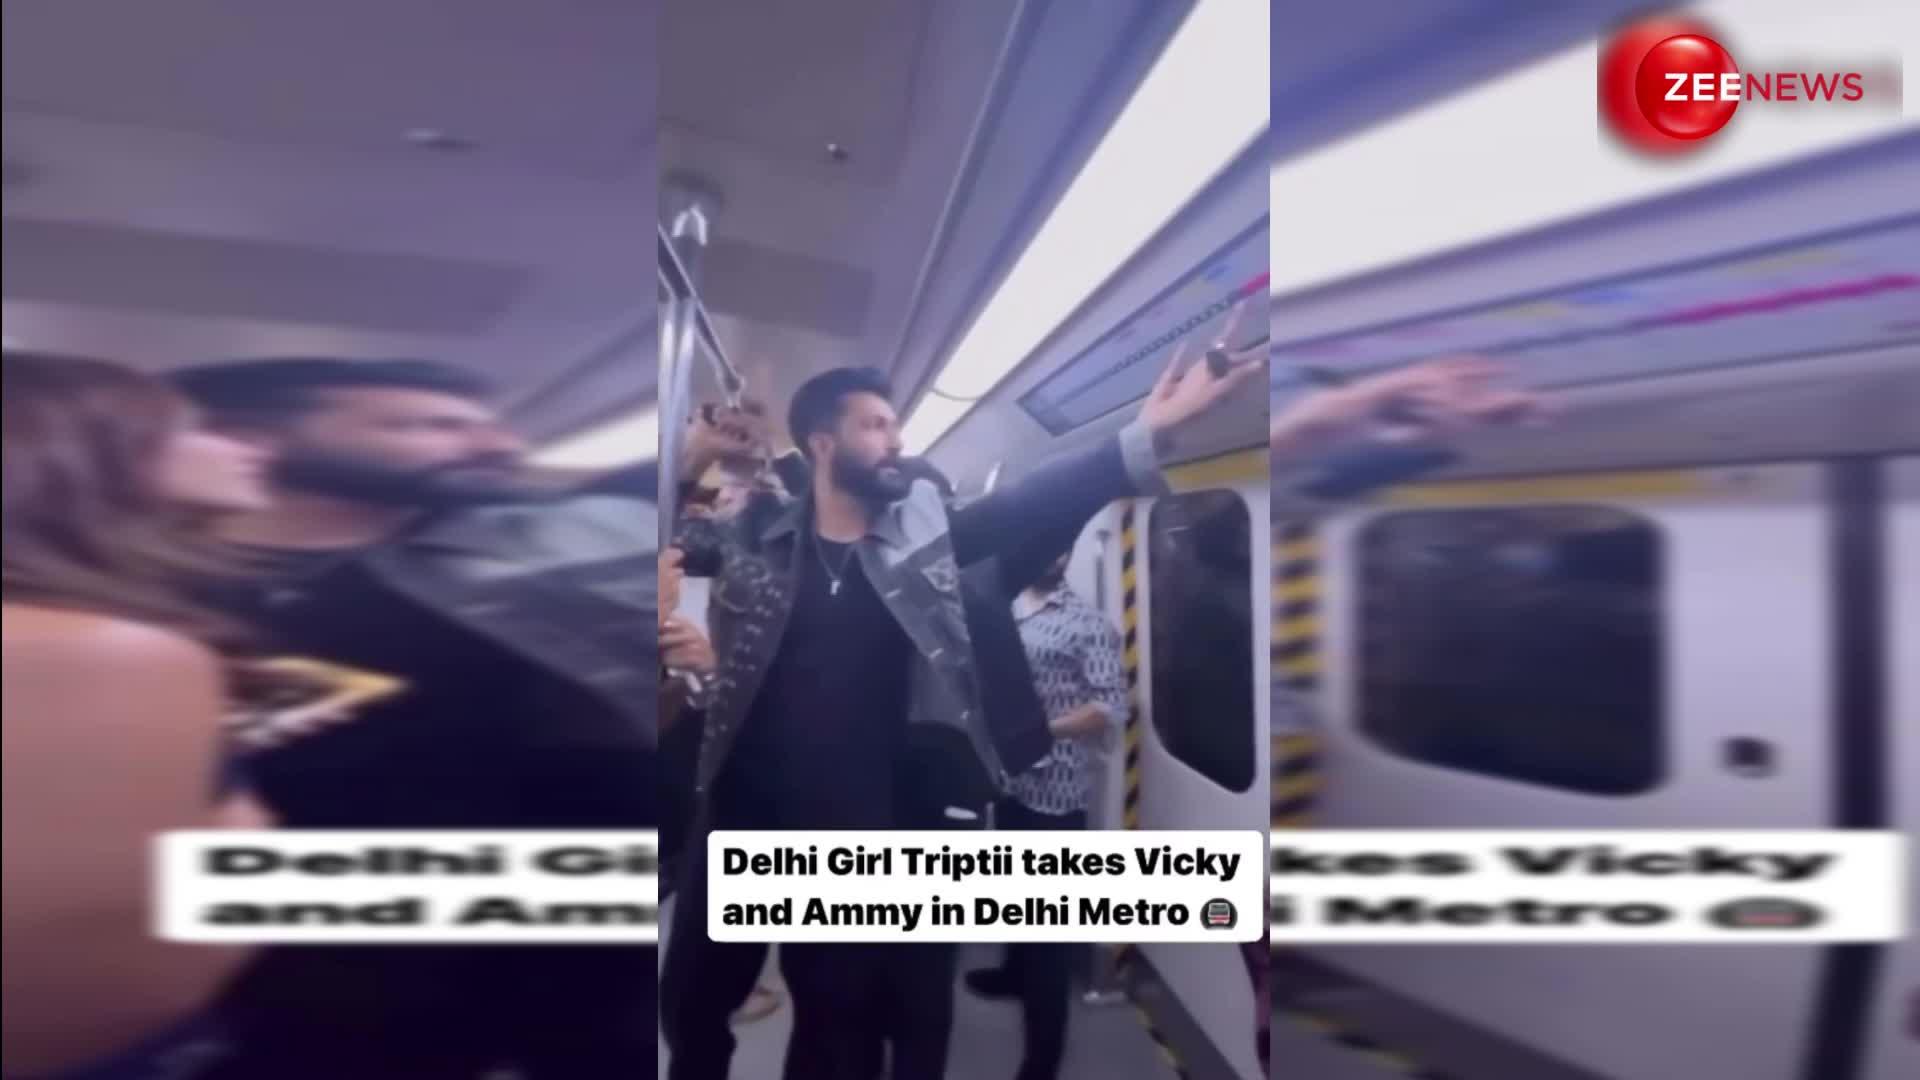 Tripti Dimri संग Vicky Kaushal और Ammy Virk ने किया दिल्ली मेट्रो में सफर, जमकर वायरल हो रहा वीडियो